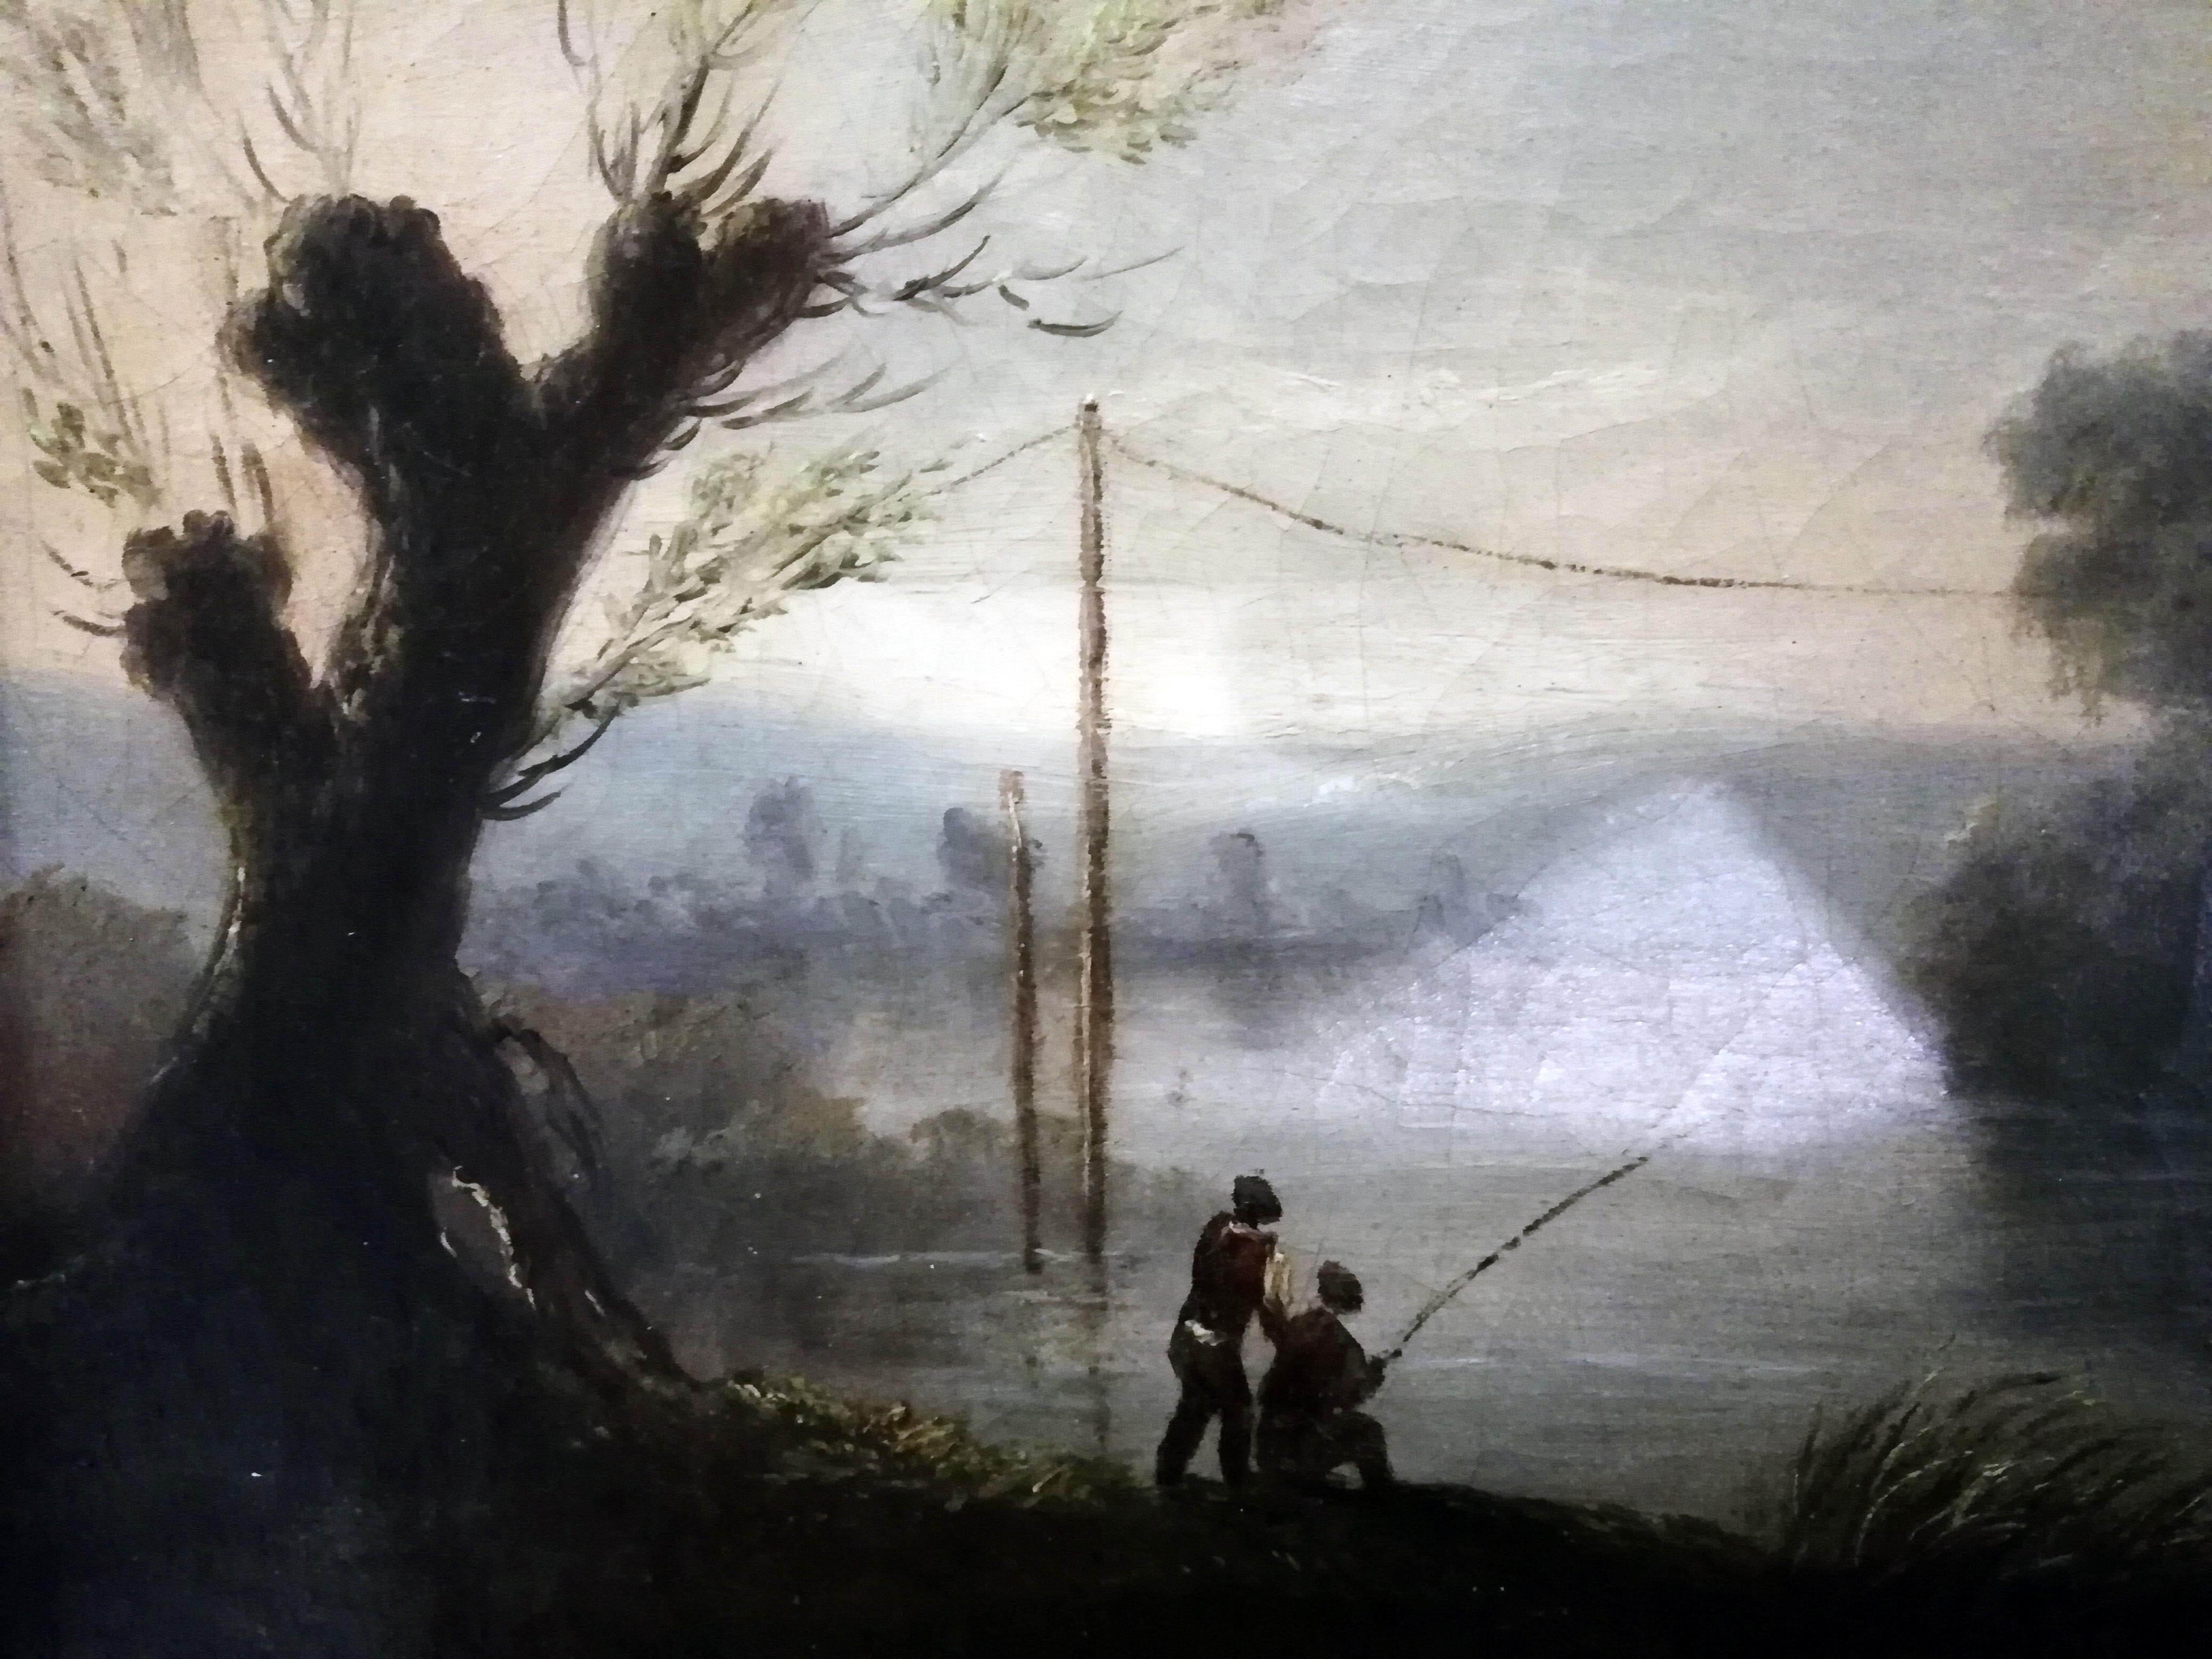 Ein schönes Öl auf Leinwand des französischen Künstlers Jean-Victor Bertin, das eine Landschaft mit einem Fluss, Fischern, einer Hütte, Bäumen, einem Holzsteg und einem Boot mit Damen und einem Hund zeigt.

Öl auf Leinwand. Signiert unten links,